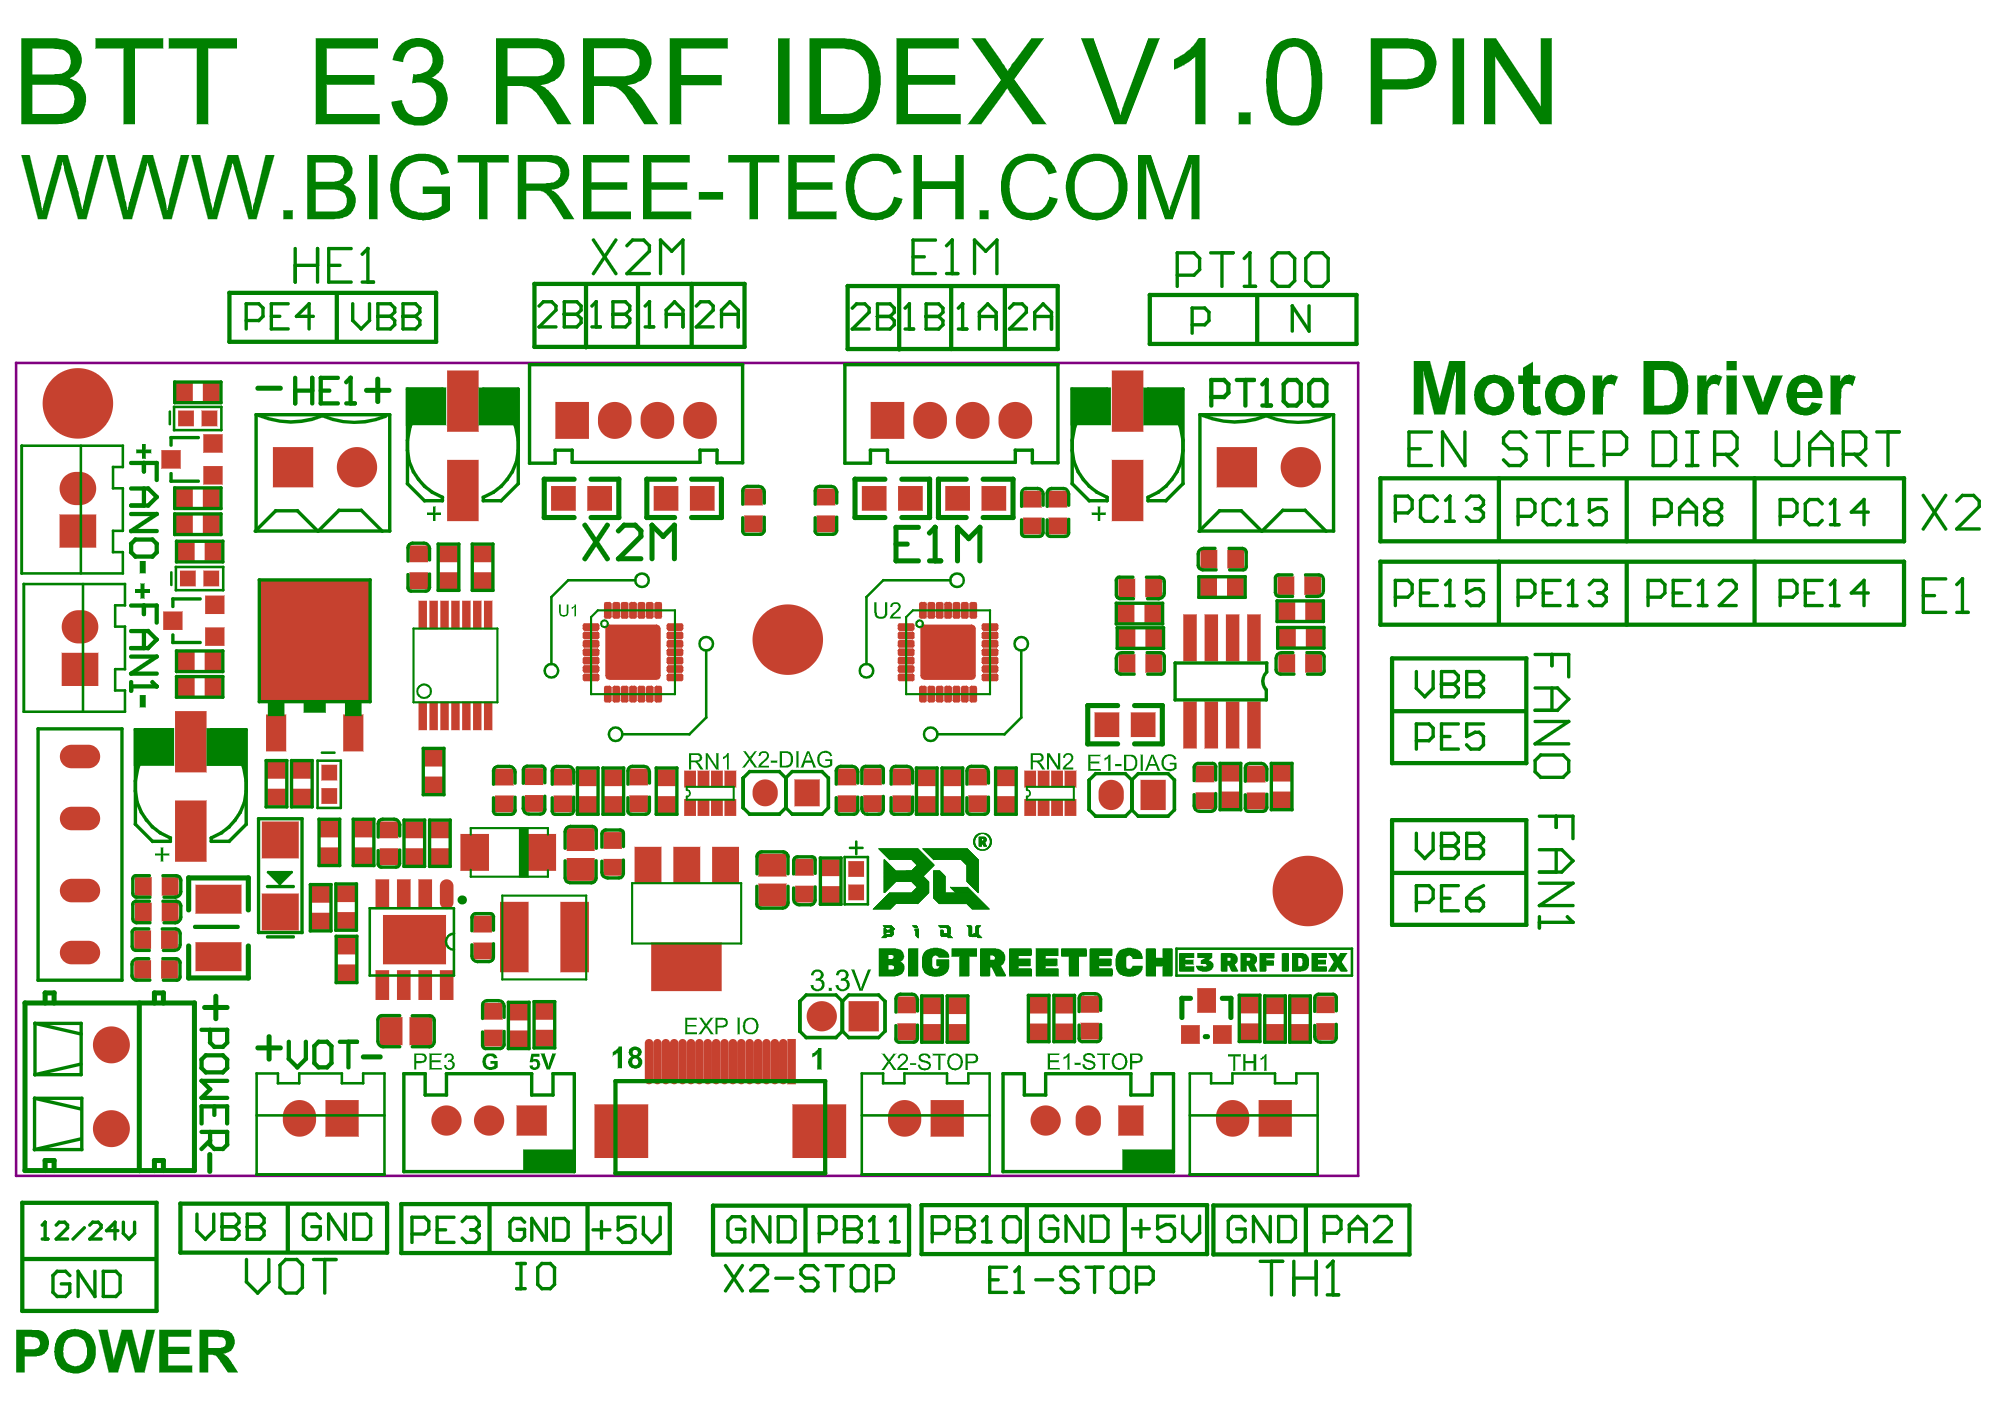 SKR-RRF-E3 IDEX